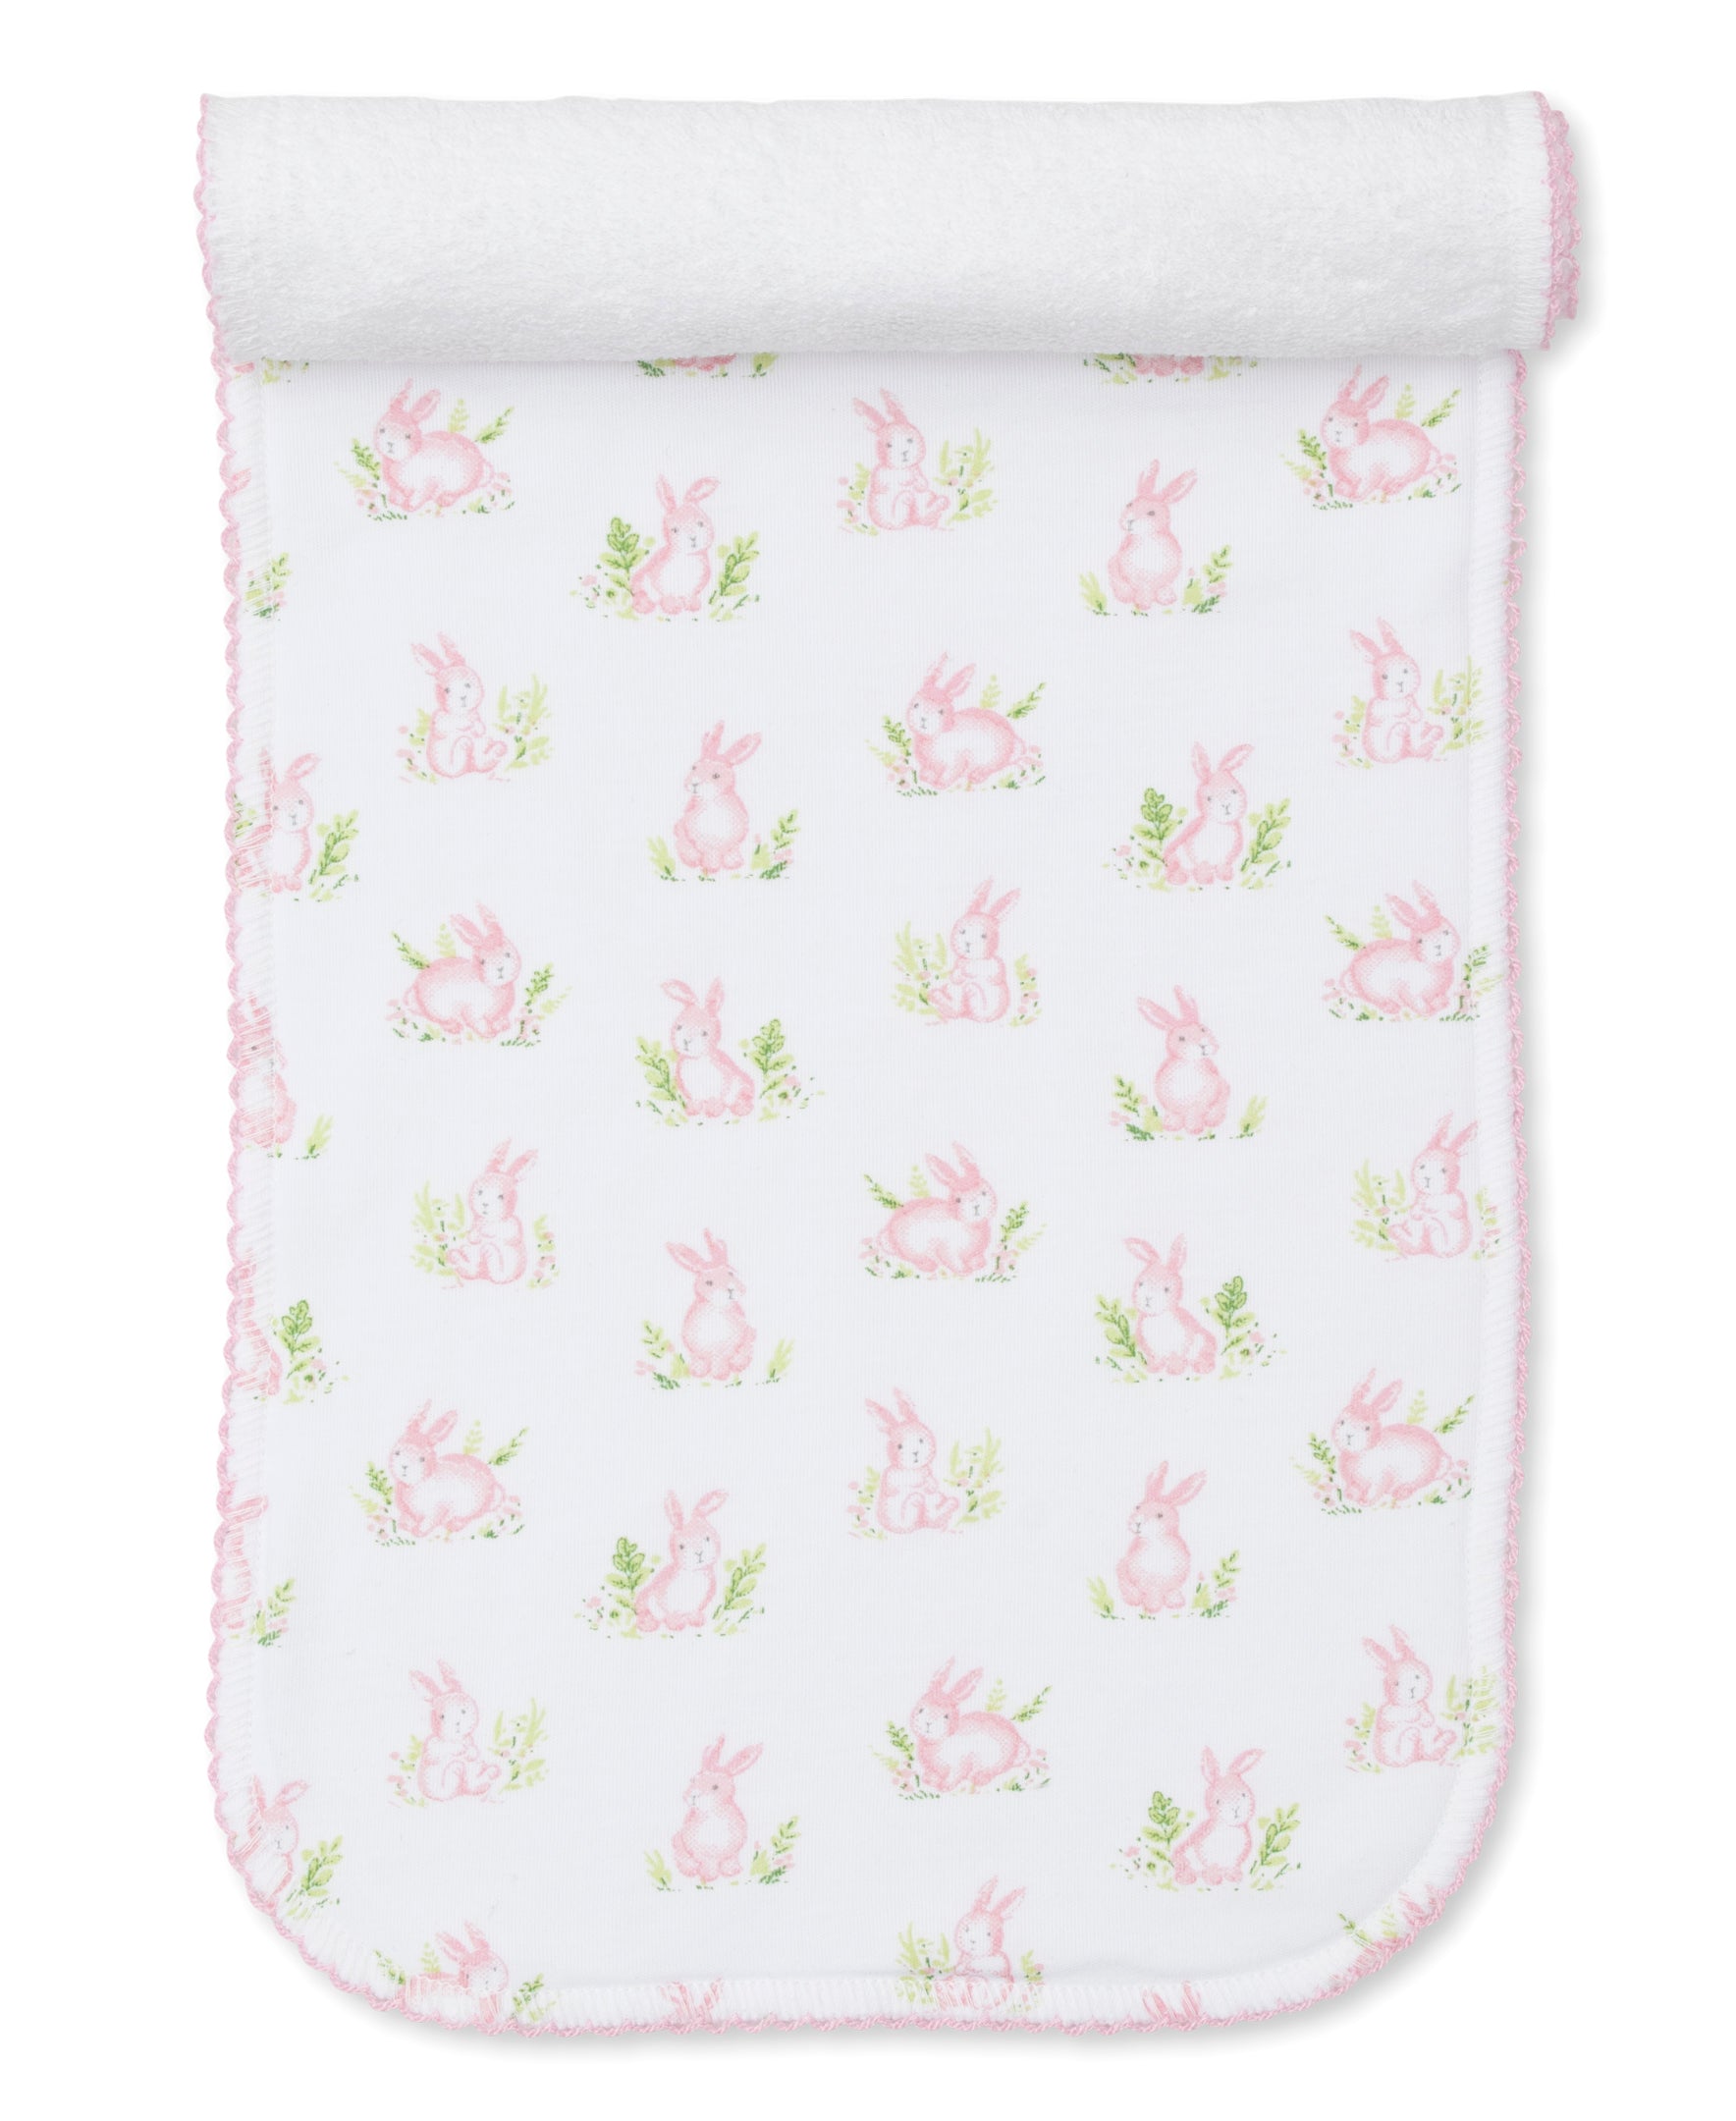 Cottontail Hollows: Light Pink Bunnies Print Burp Cloth